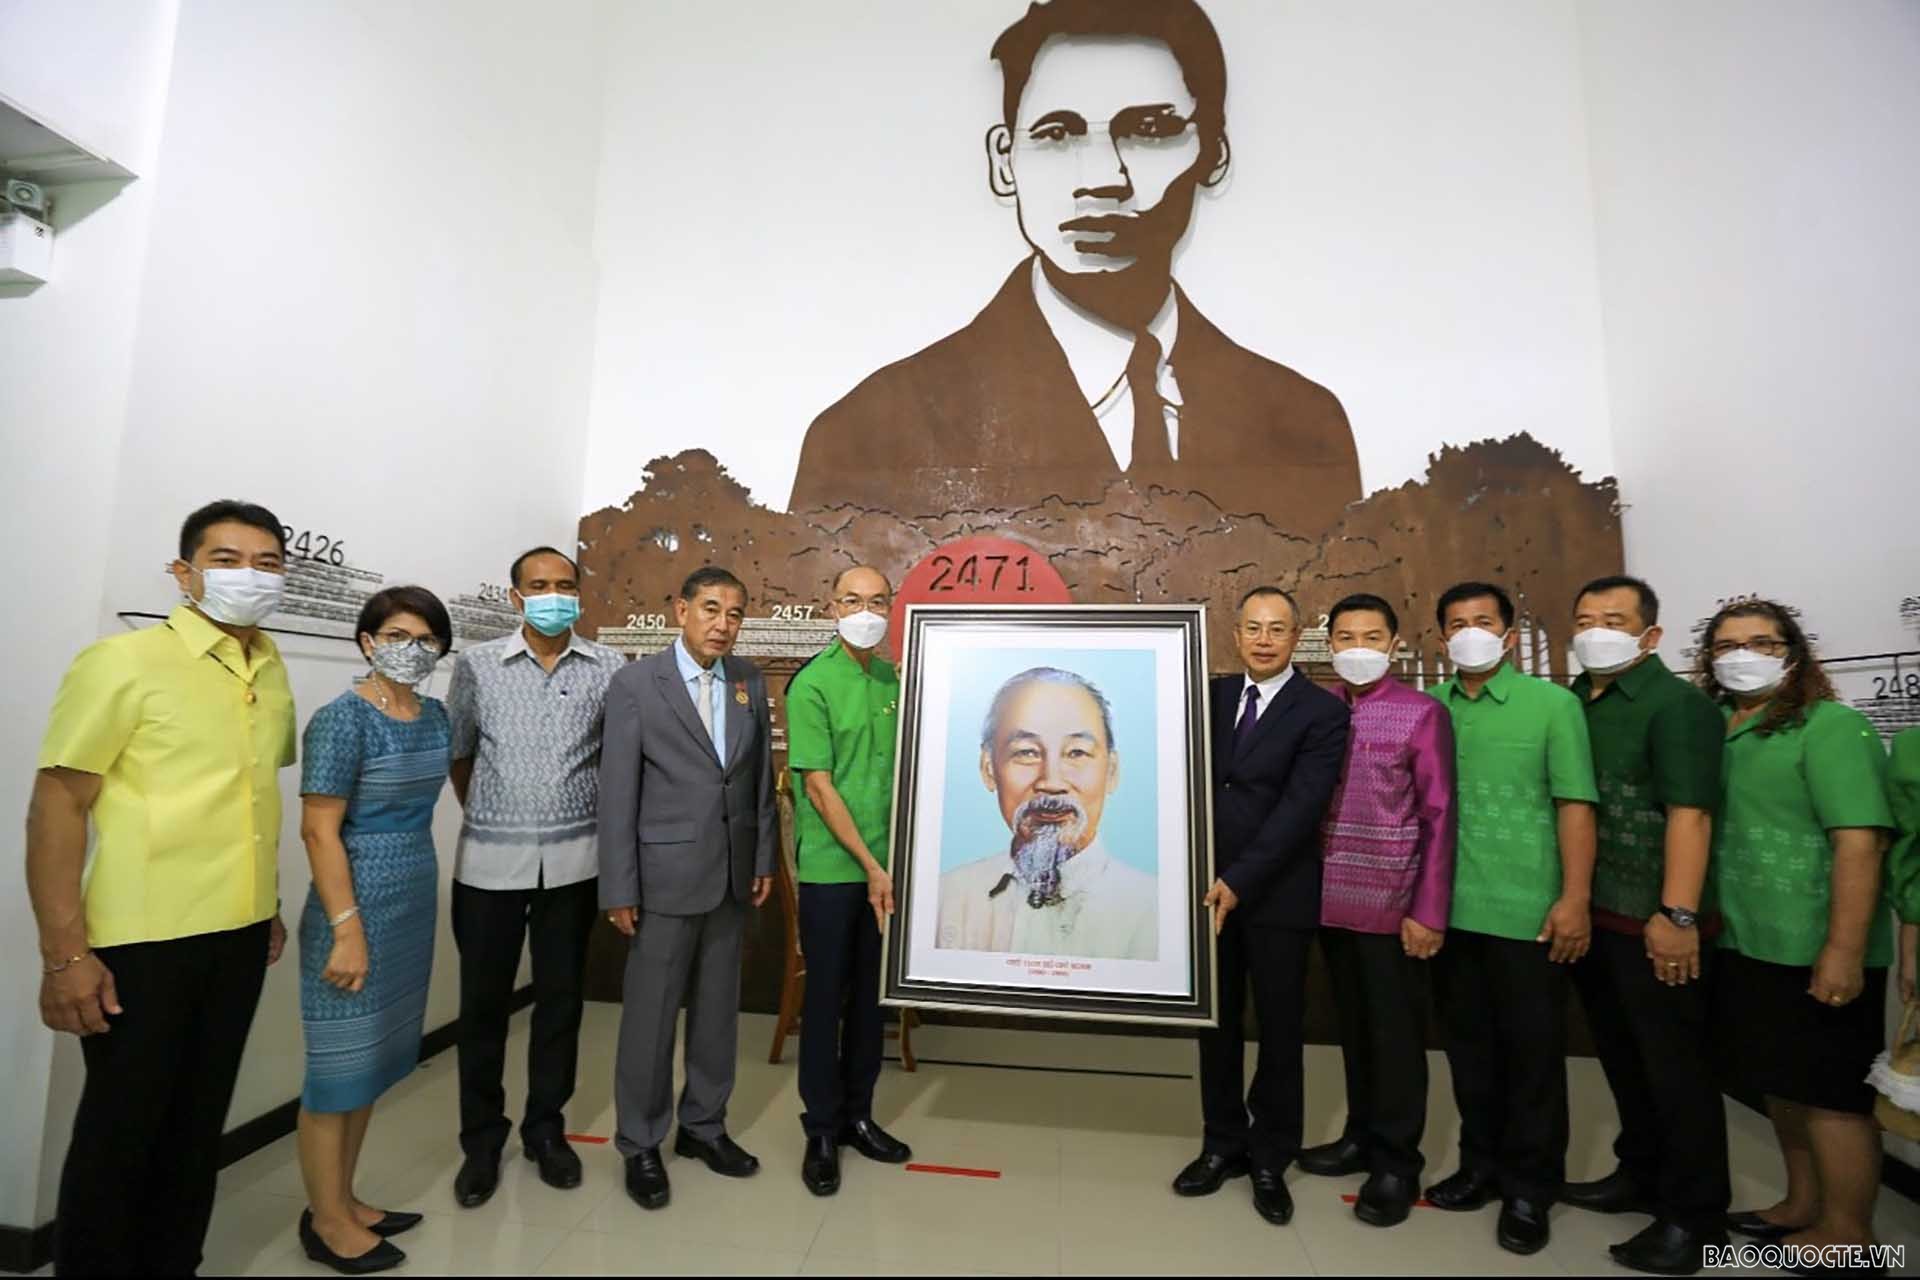 Đại sứ Phan Chí Thành trao Bức chân dung Chủ tịch Hồ Chí Minh cho Trưởng Ban quản lý Bảo tàng.